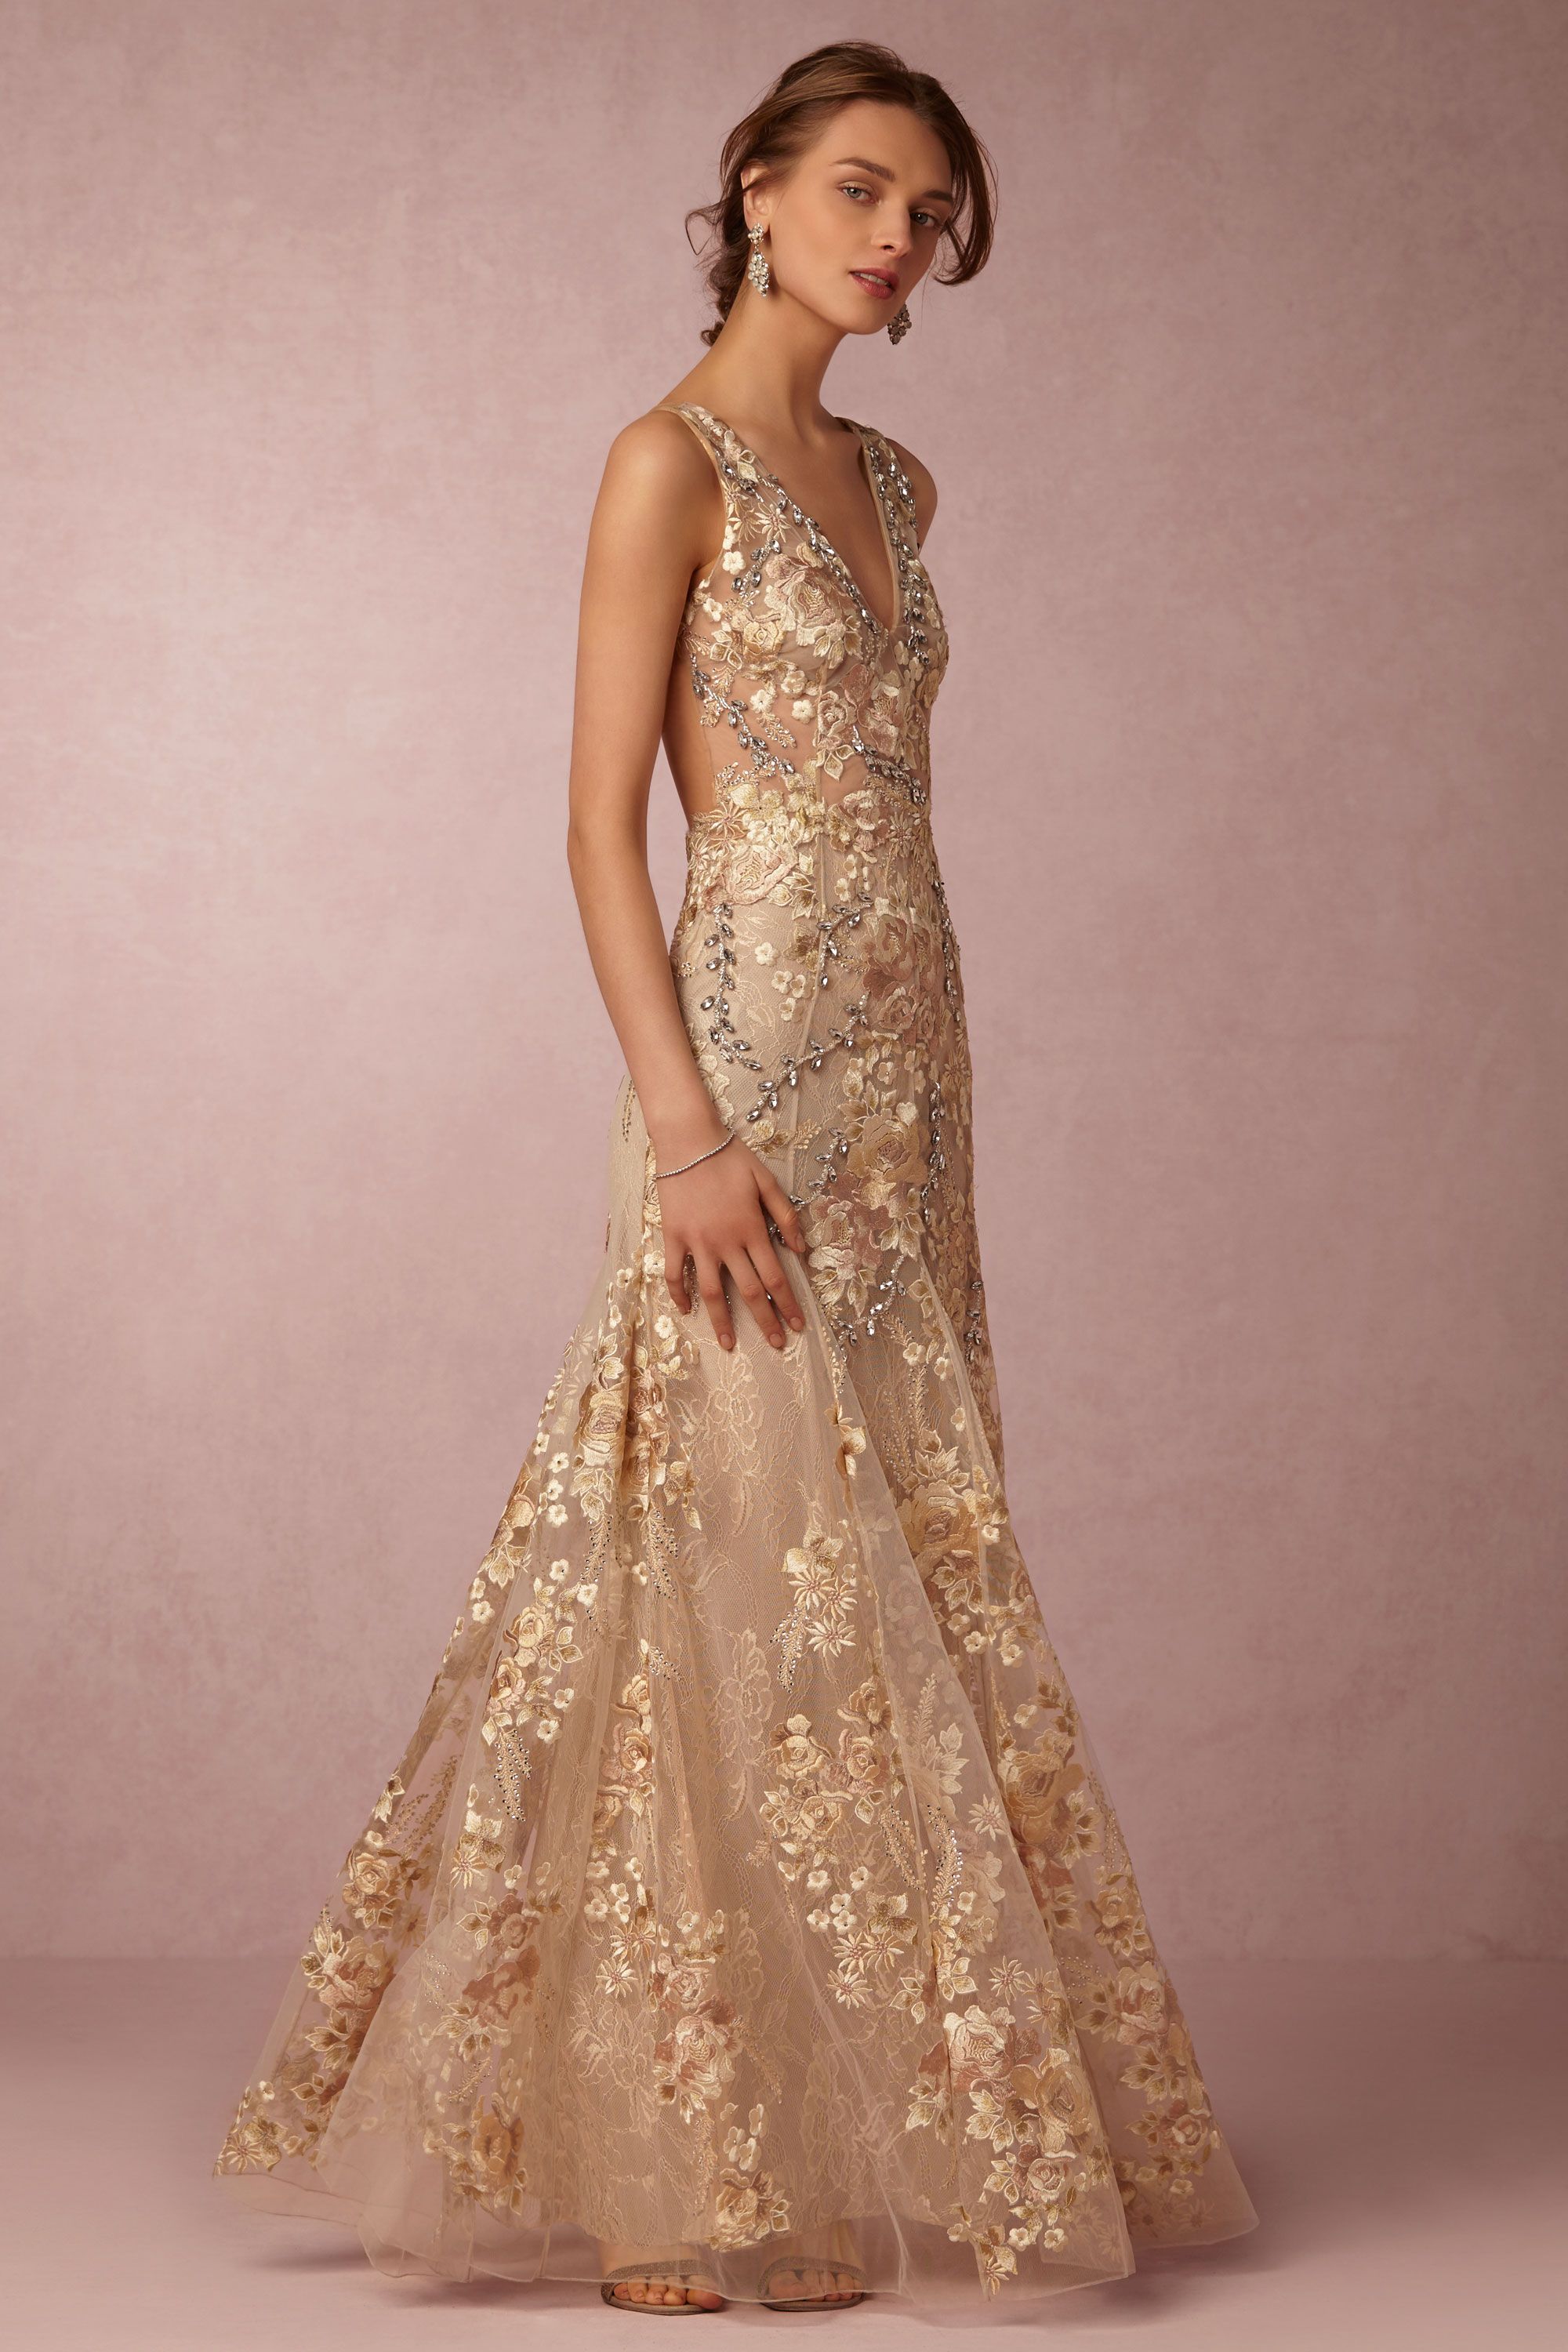 12 Elegant Jackie O Wedding Dress Style